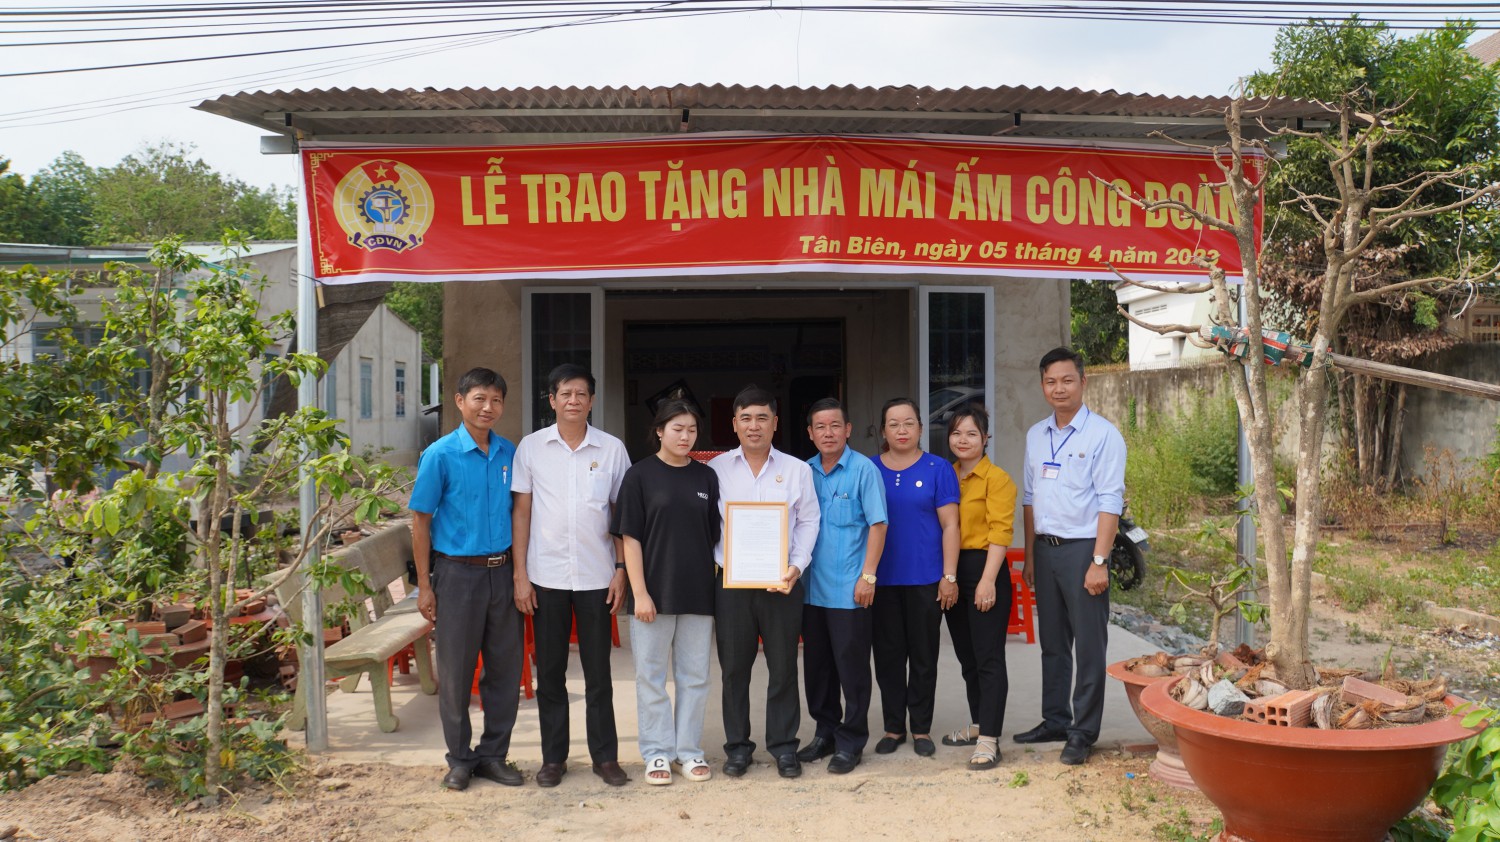 LĐLĐ huyện Tân Biên trao nhà Mái ấm công đoàn cho công đoàn viên có hoàn cảnh khó khăn.